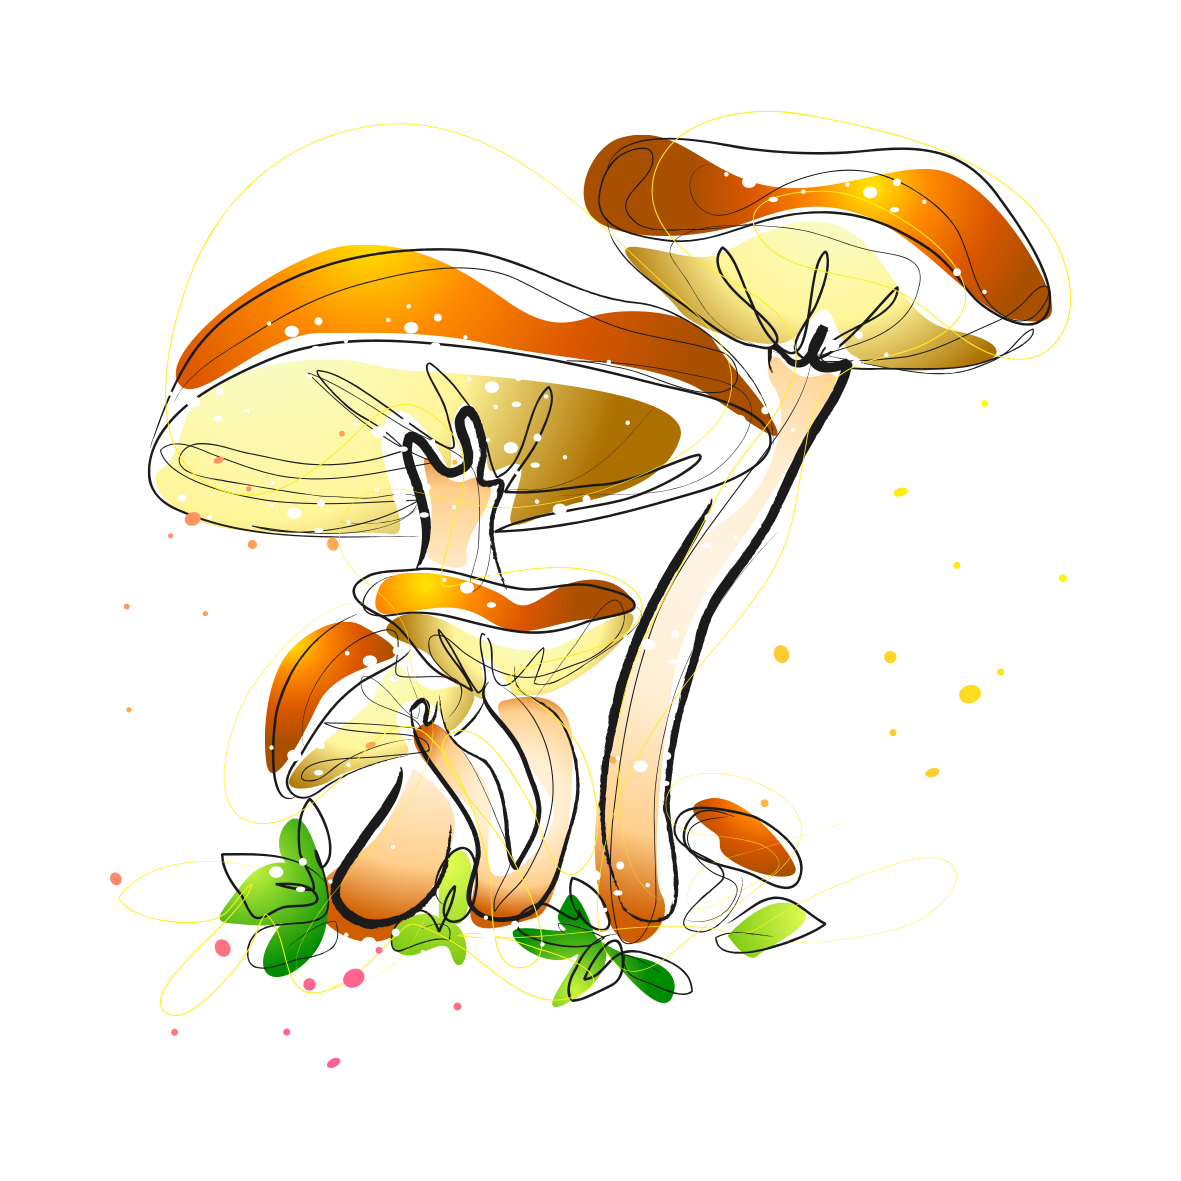 mushroom clipart watercolor